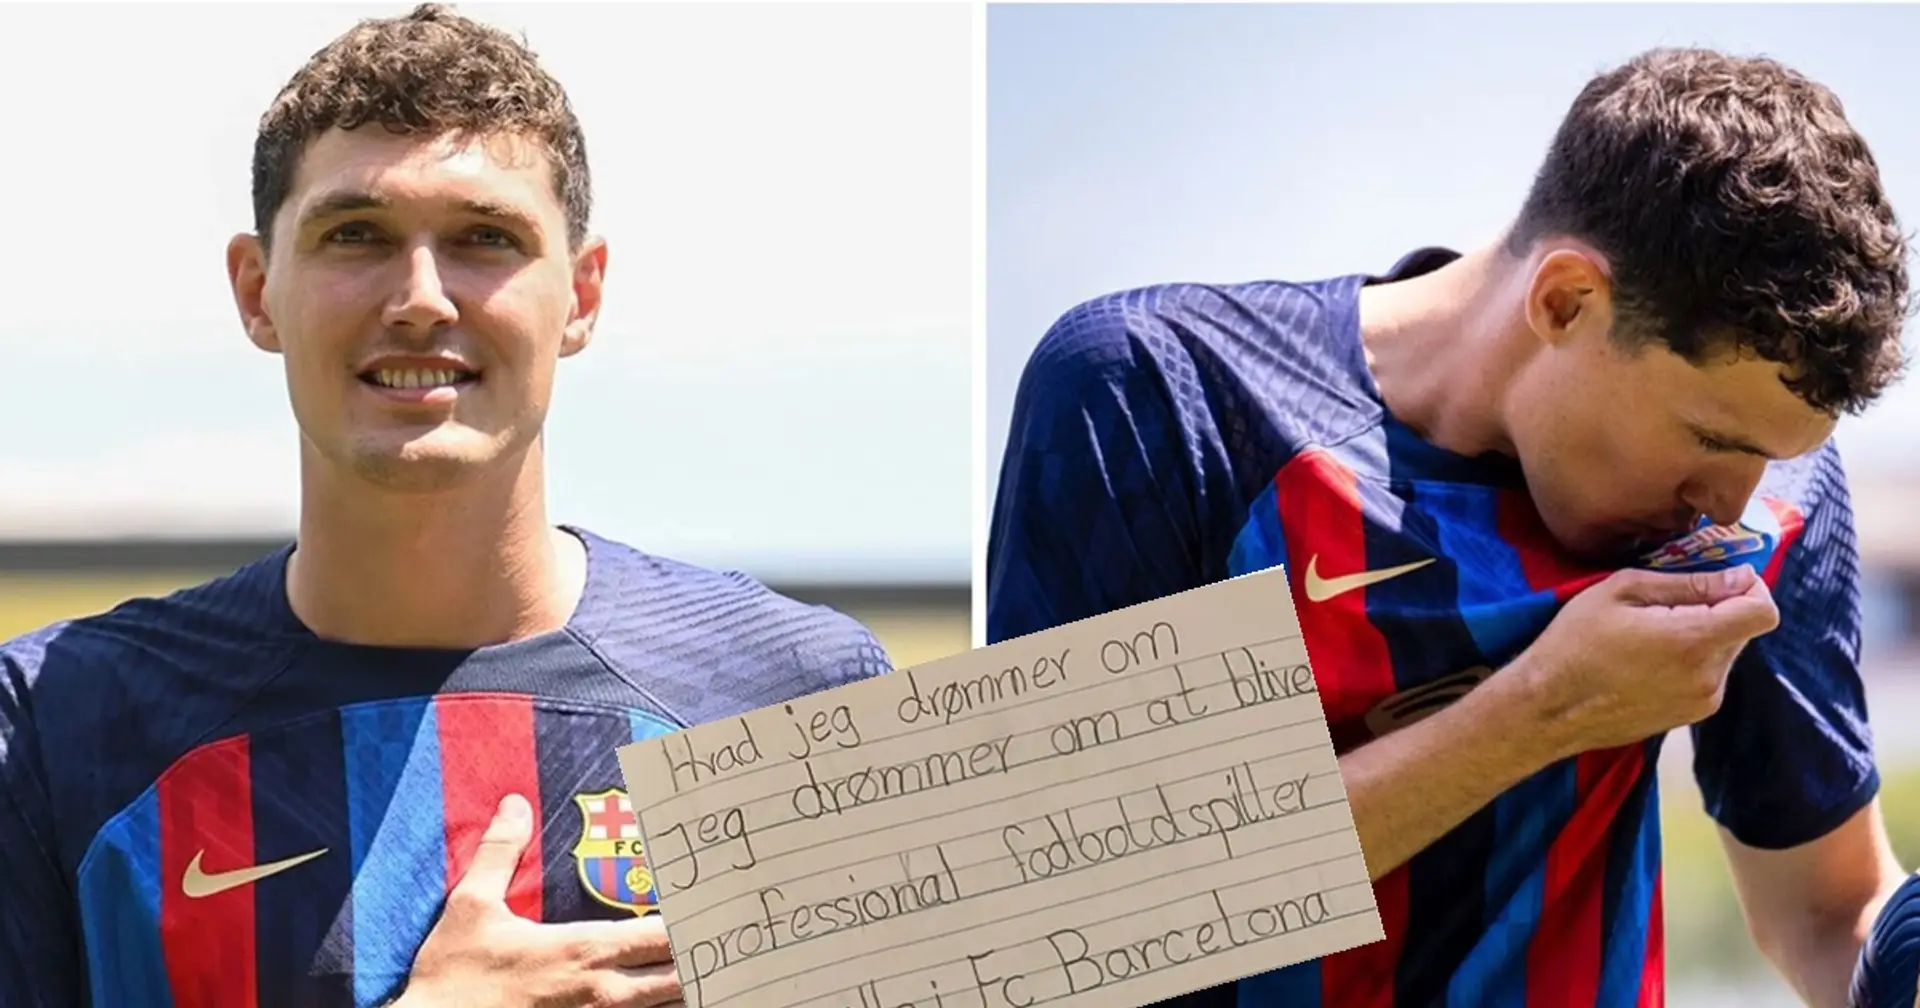 "Wenn ich Profi werde, ist es mein Traum, für Barcelona zu spielen": Barca veröffentlicht eine Tagebuchnotiz des 8-jährigen Christensen